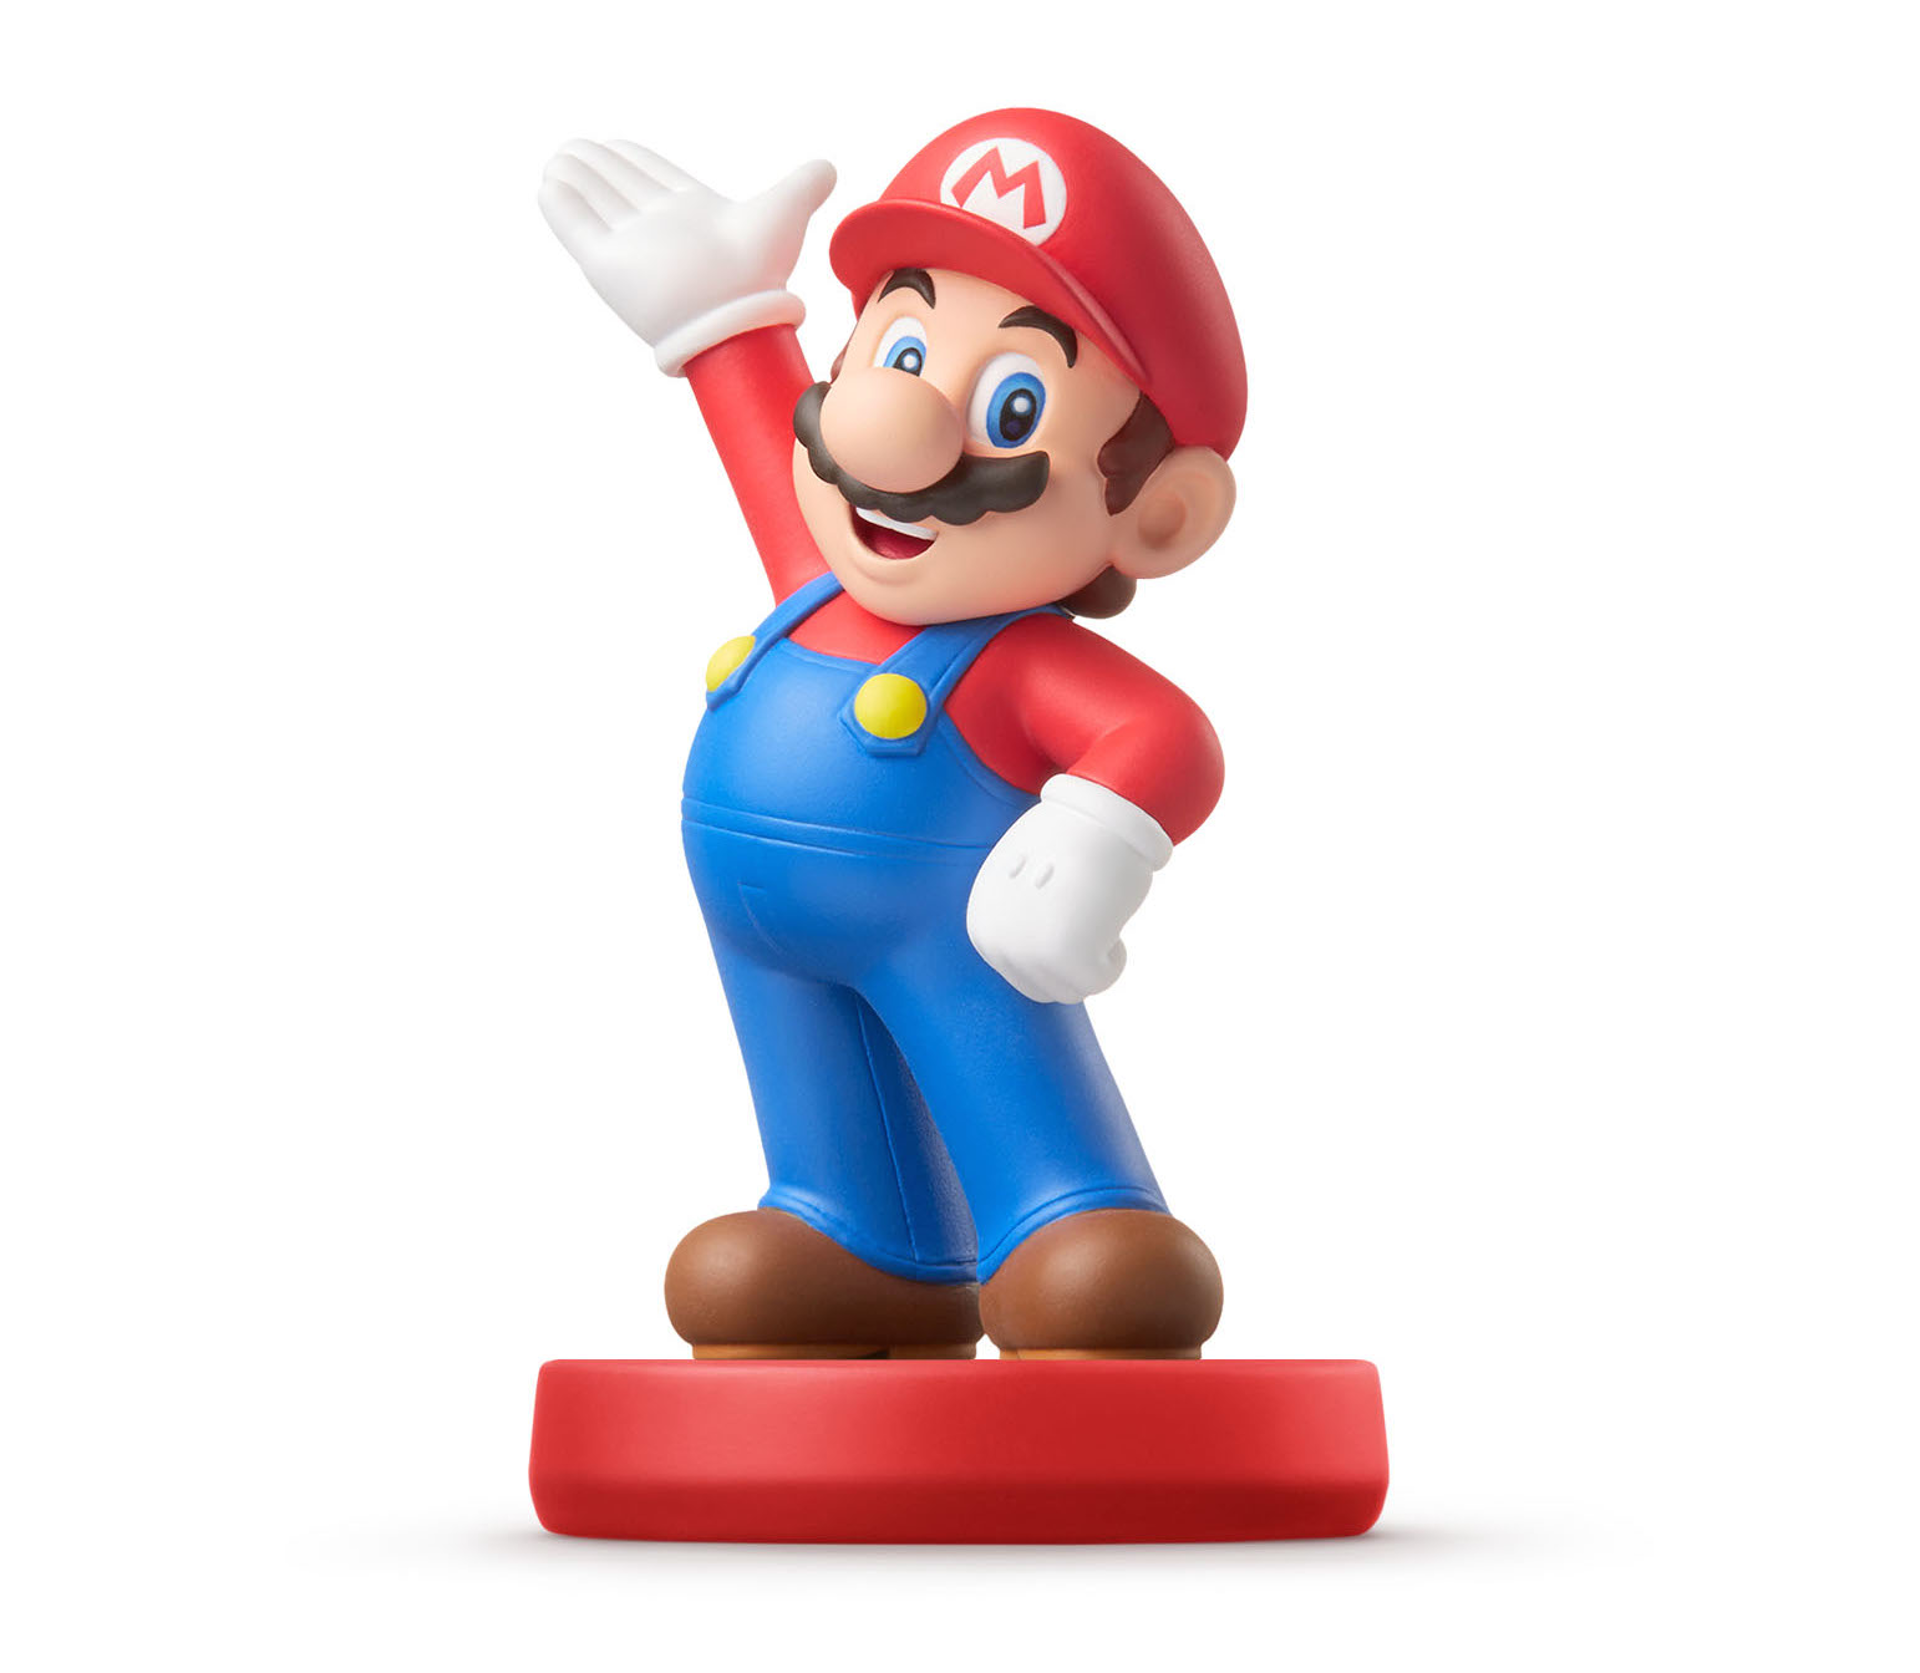 Amiibo Mario - Super Mario Bros. Collection